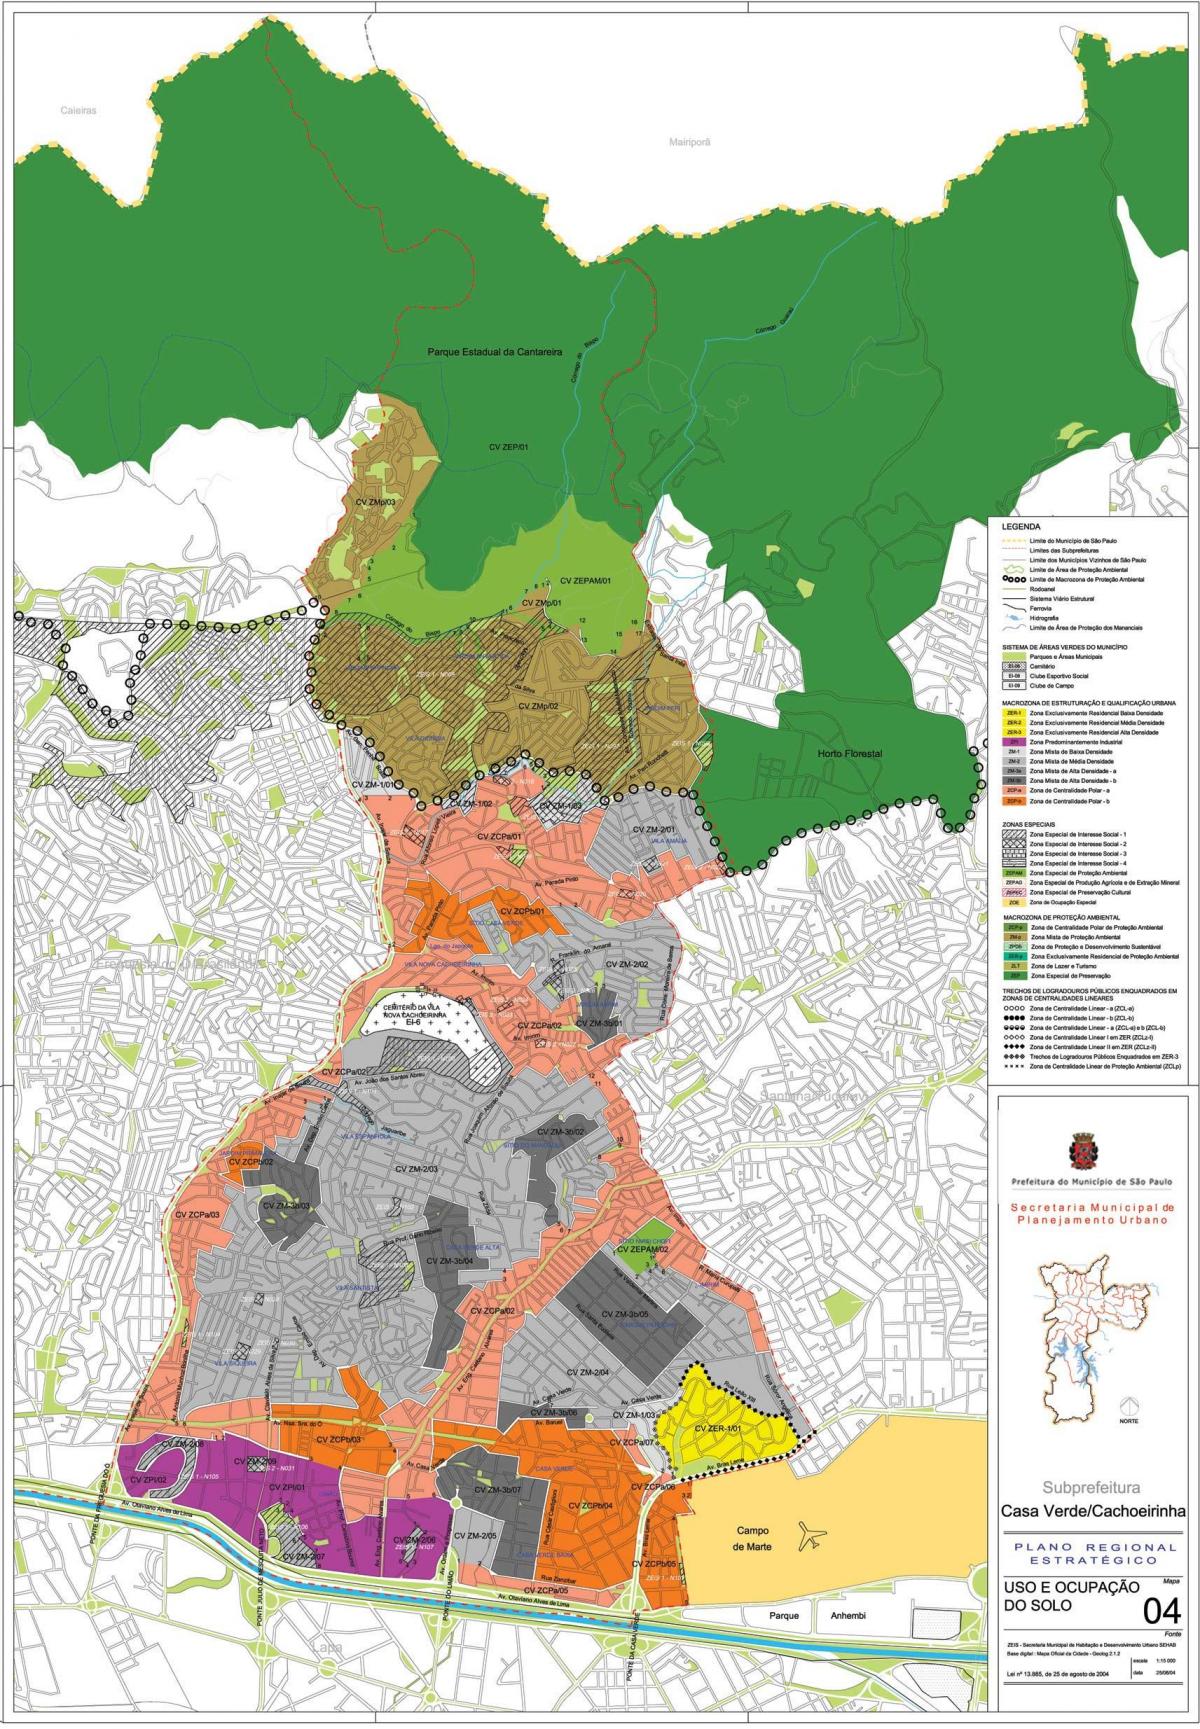 Kort over Casa Verde São Paulo - Besættelse af jord